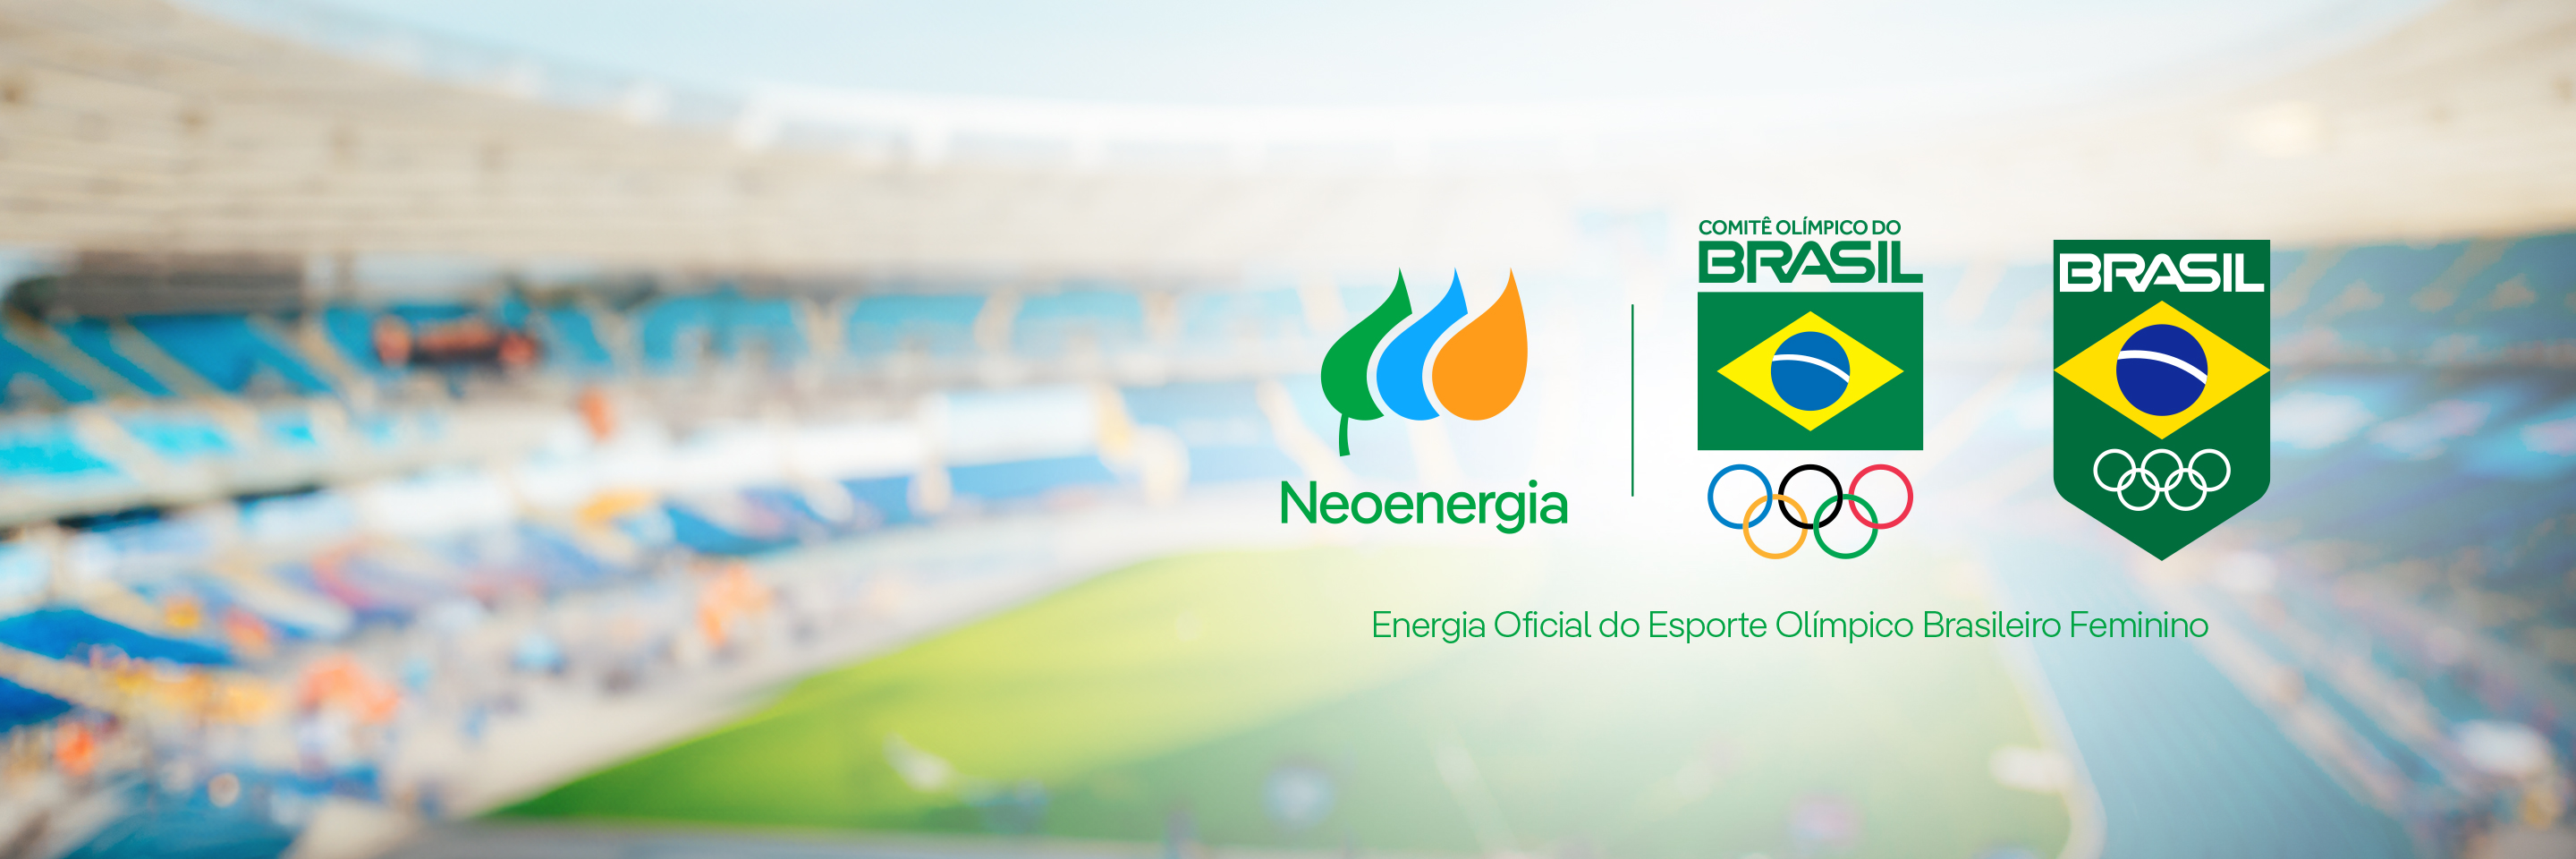 Neoenergia anuncia parceria com o Comitê Olímpico do Brasil para fortalecer ainda mais o esporte feminino no país